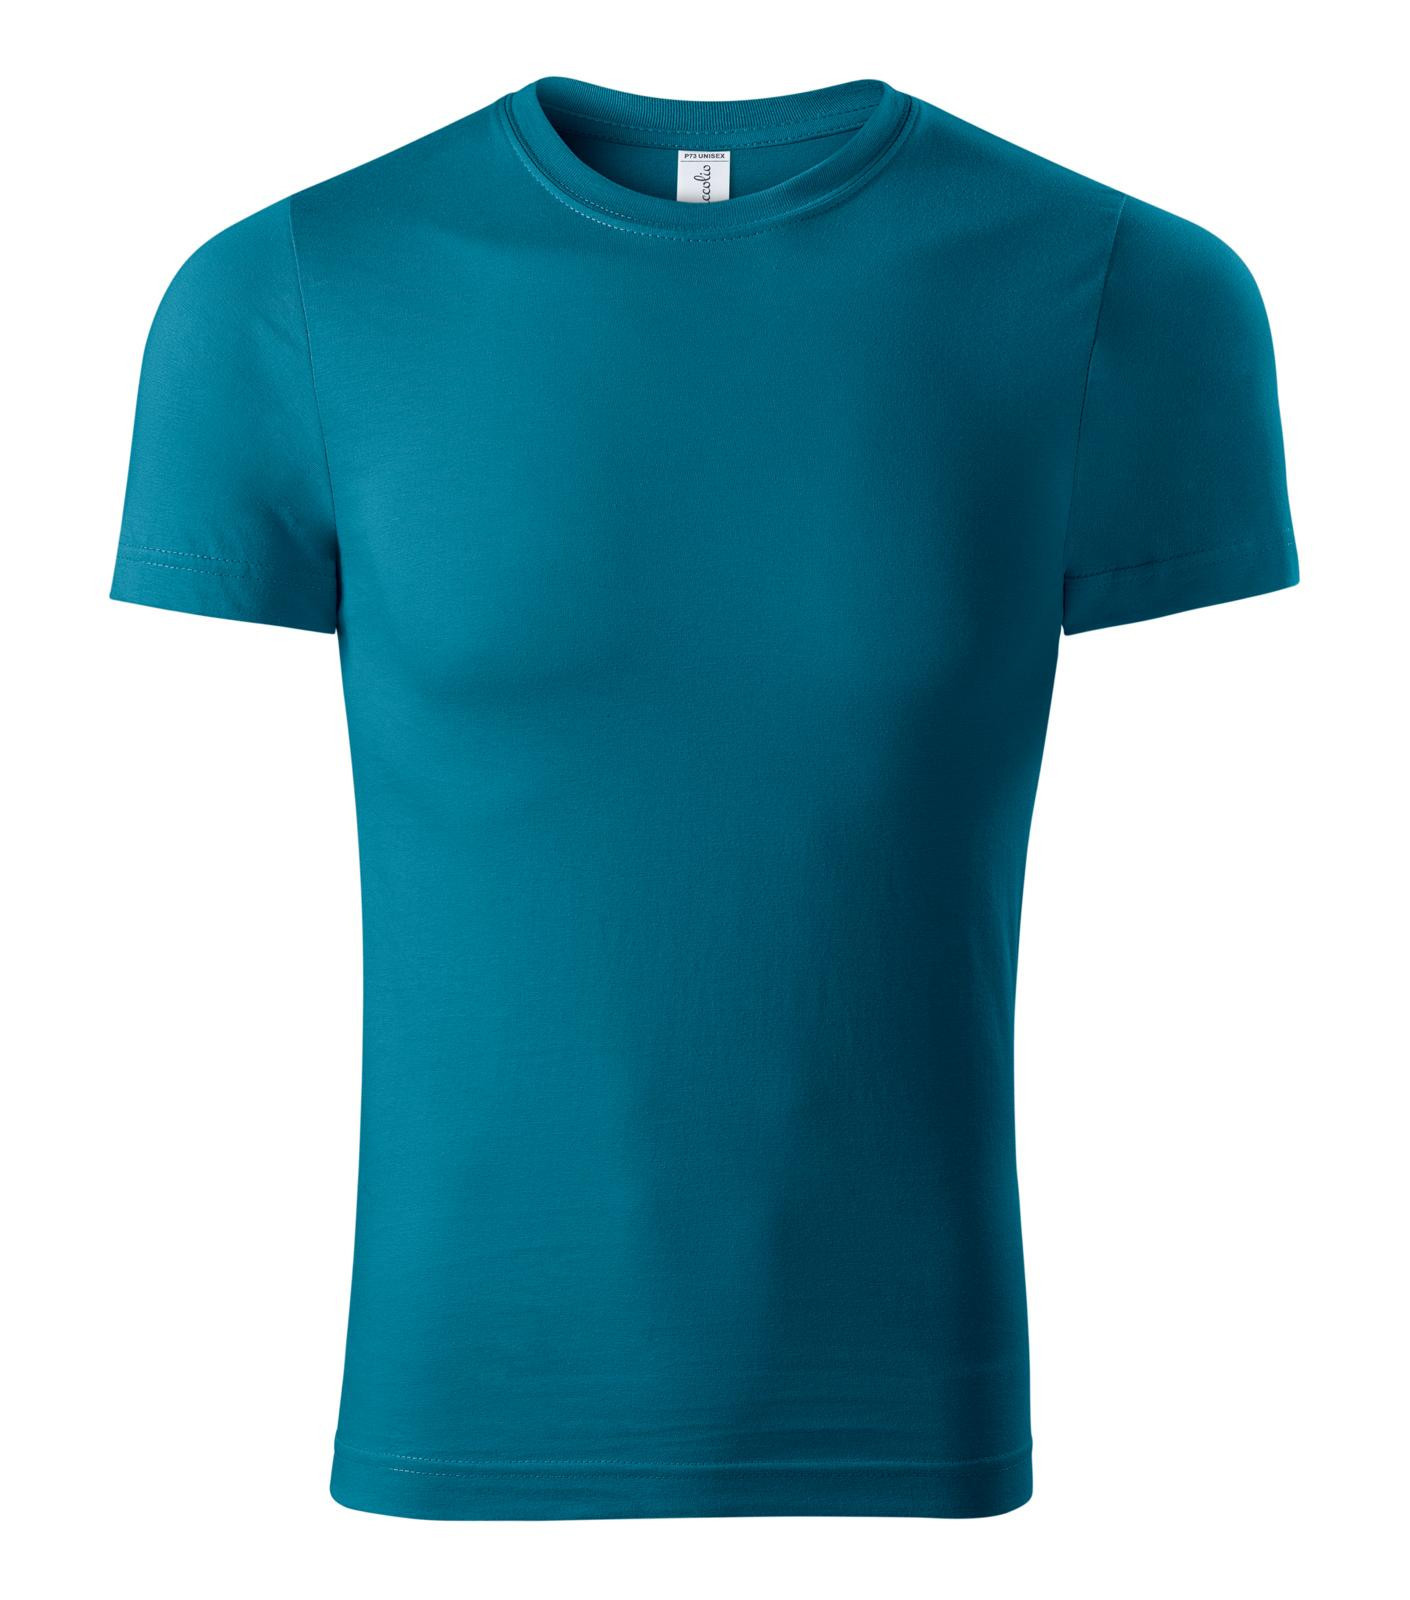 Unisex tričko Piccolio Paint P73 - veľkosť: L, farba: petrolejová